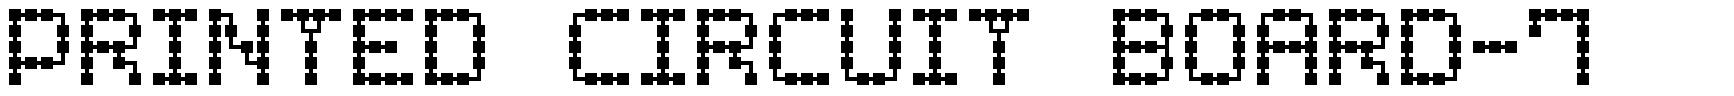 Printed Circuit Board-7 font